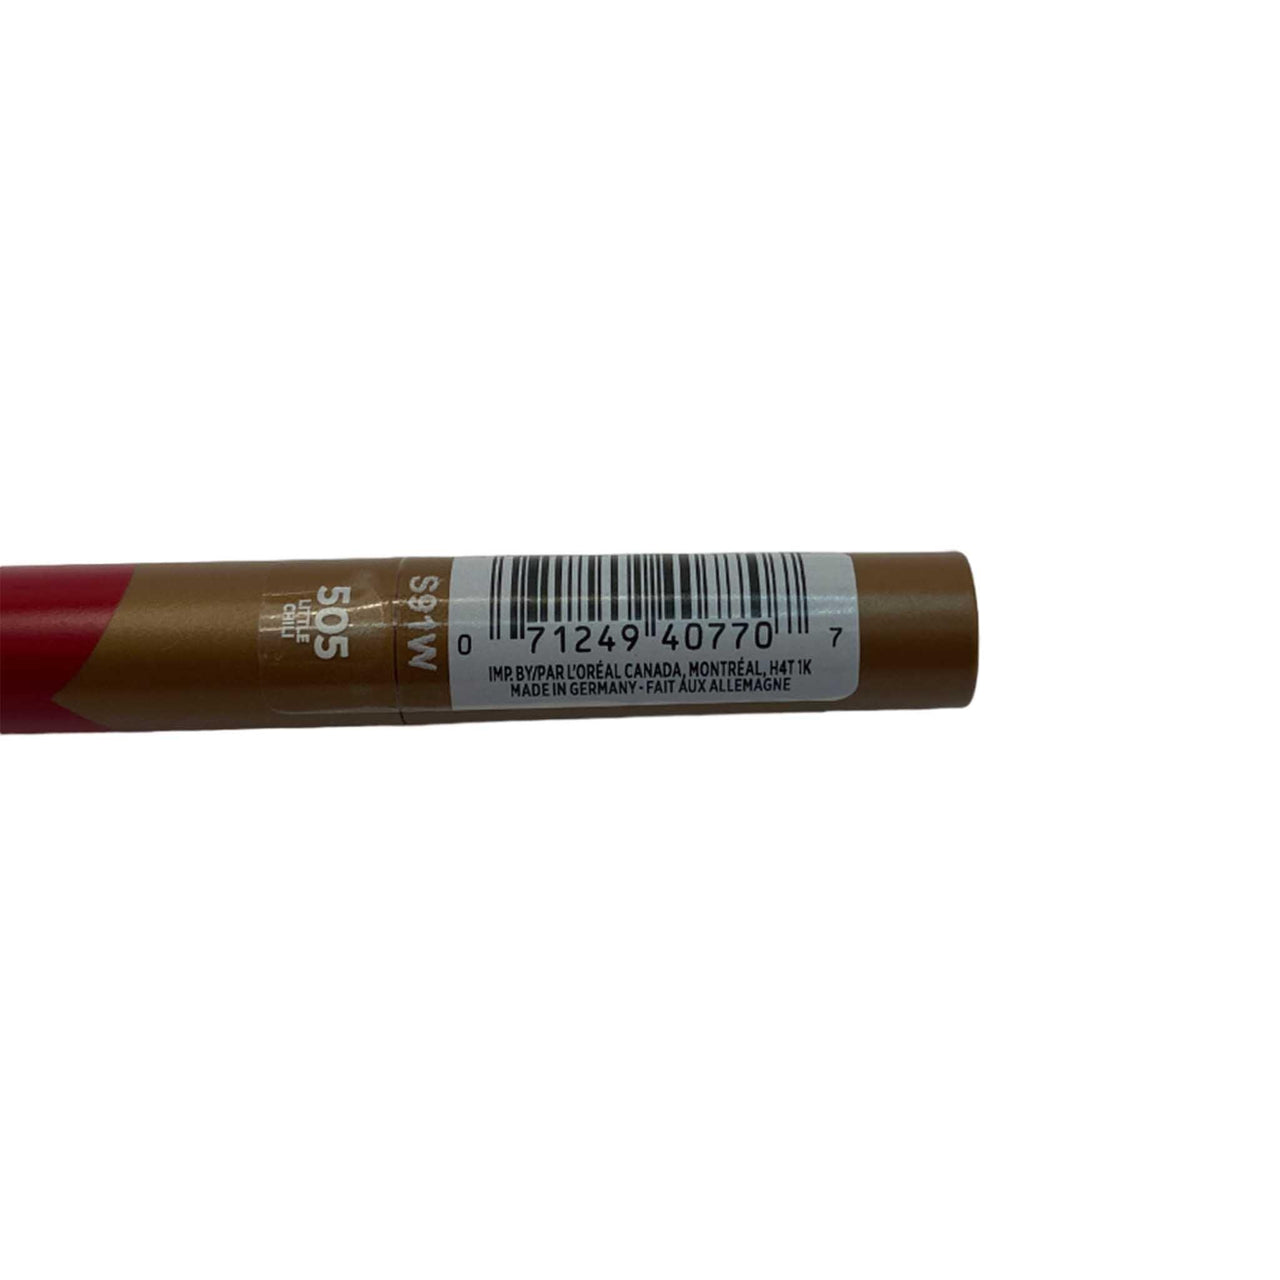 L'Oreal Paris Matte Lip Crayon 505 LITTLE CHILI (72 Pcs Box) - Discount Wholesalers Inc